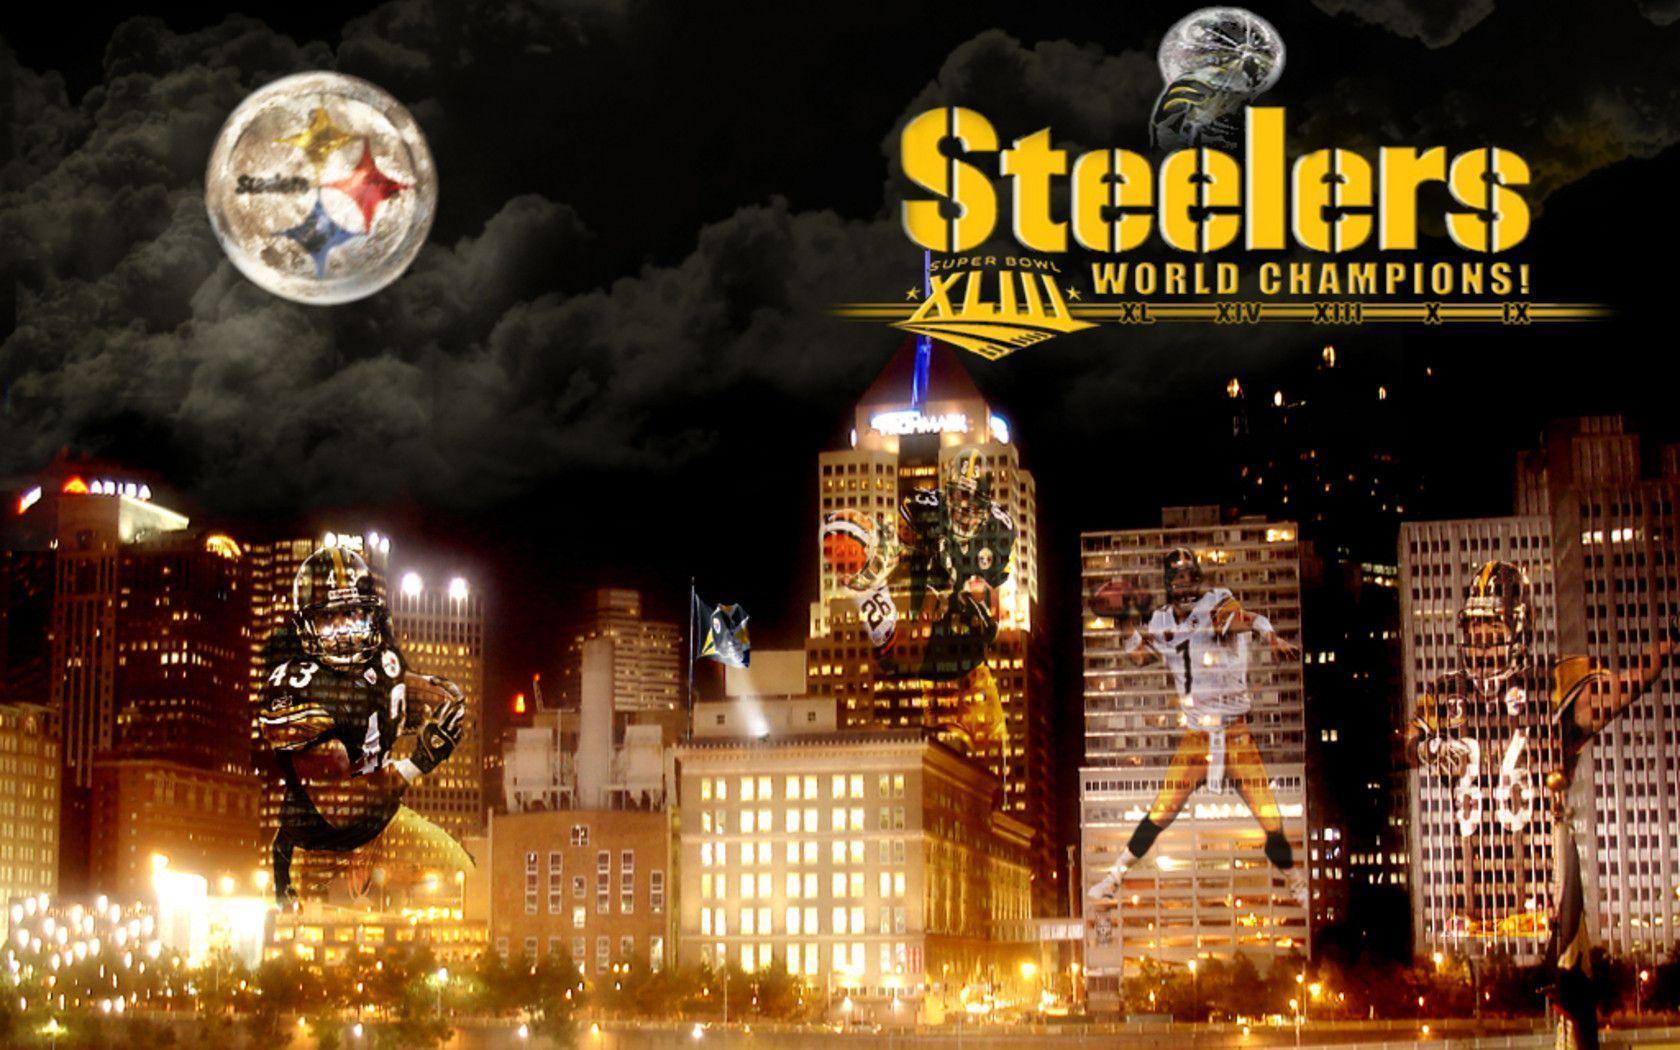 Pittsburgh Steelers HD image. Pittsburgh Steelers wallpaper